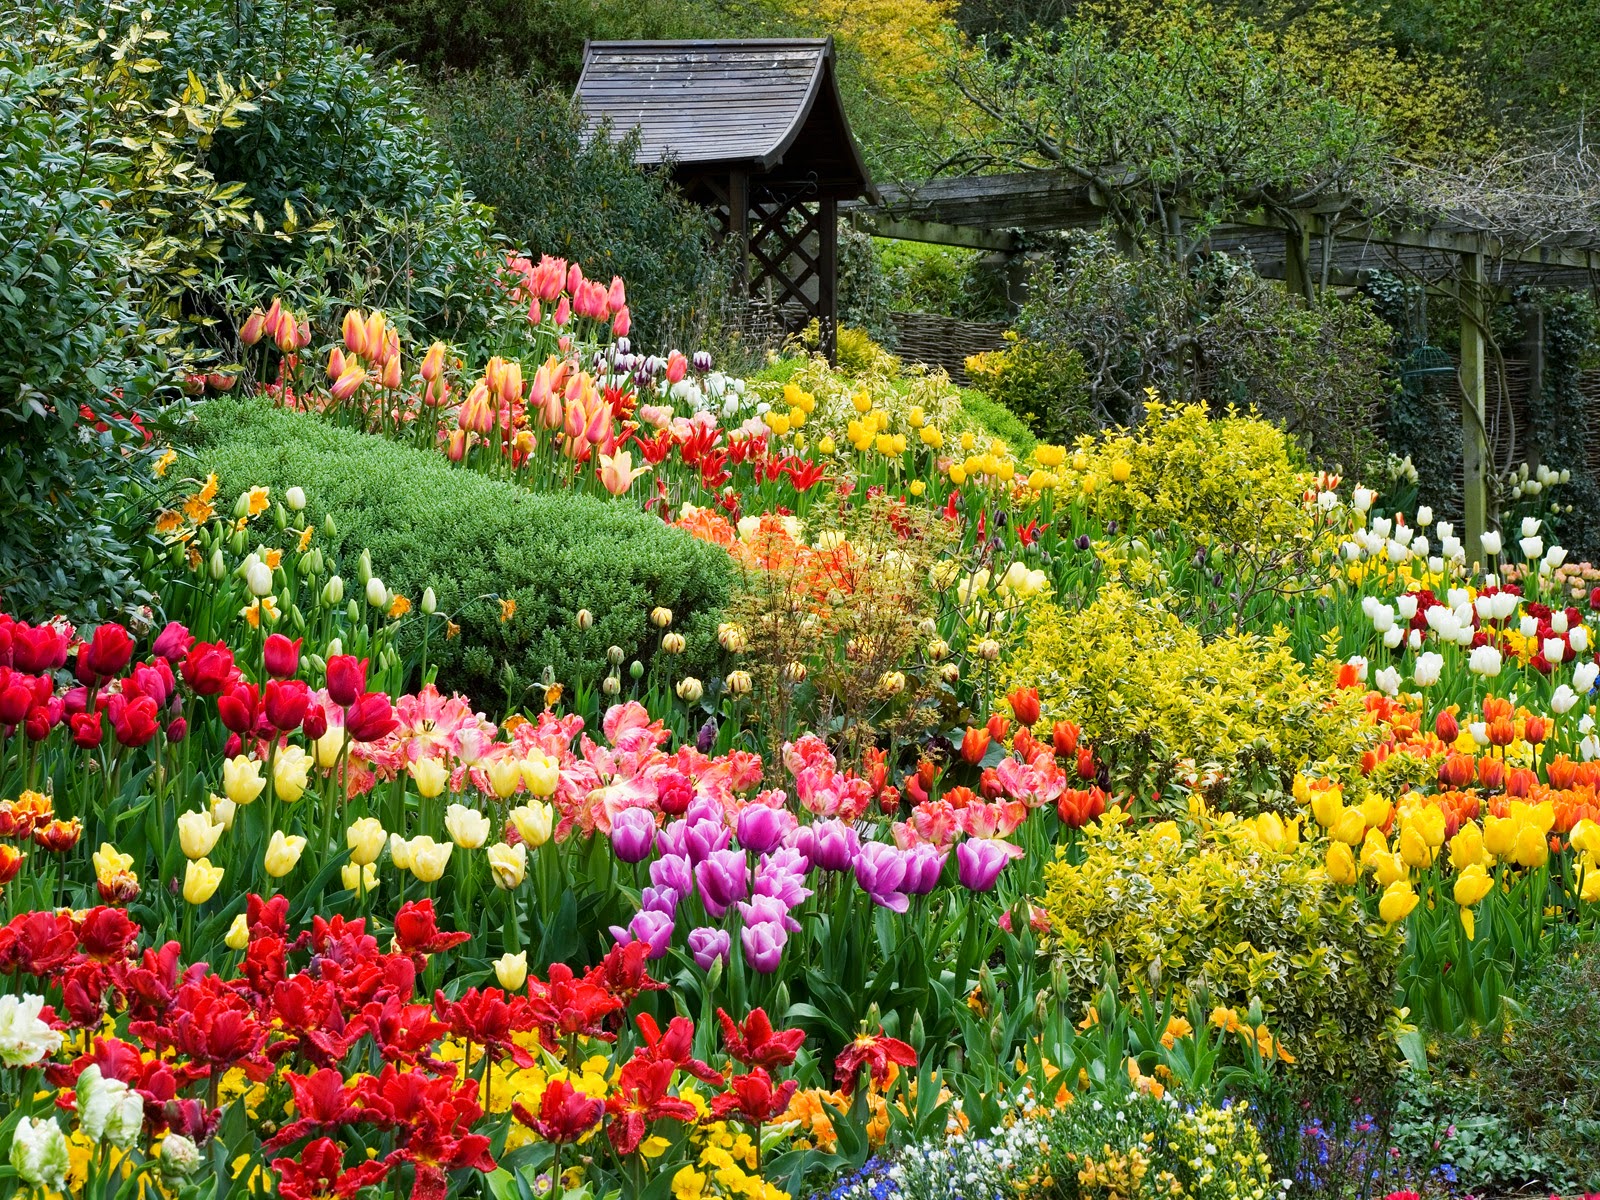 Chào đón bạn đến với vườn hoa Đà Lạt, nơi có những bông hoa tuyệt đẹp đang chờ đợi để được khám phá. Hãy cùng chiêm ngưỡng những bức ảnh đẹp tuyệt vời sau đó đến thăm những vườn hoa này nếu có dịp nhé!